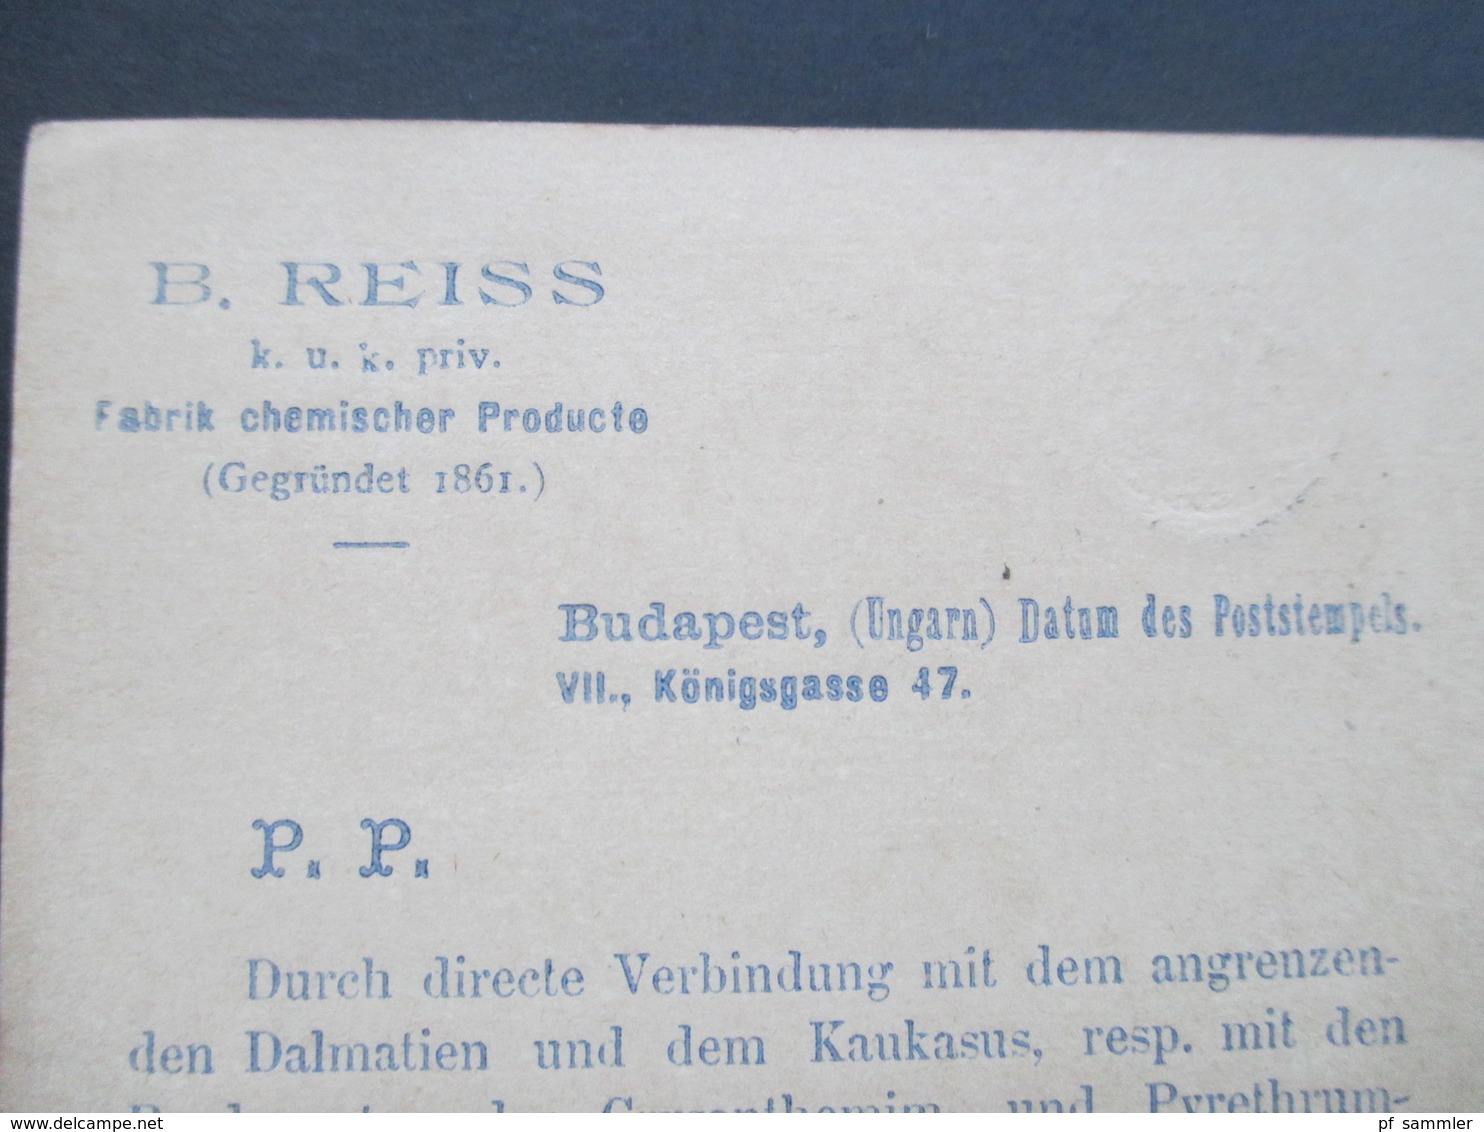 Ungarn 1889 Ganzsache Firmenwerbung! B. Reiss KuK Priv. Fabrik Chemischer Producte. Ungefärbtes Insectenpulver - Lettres & Documents